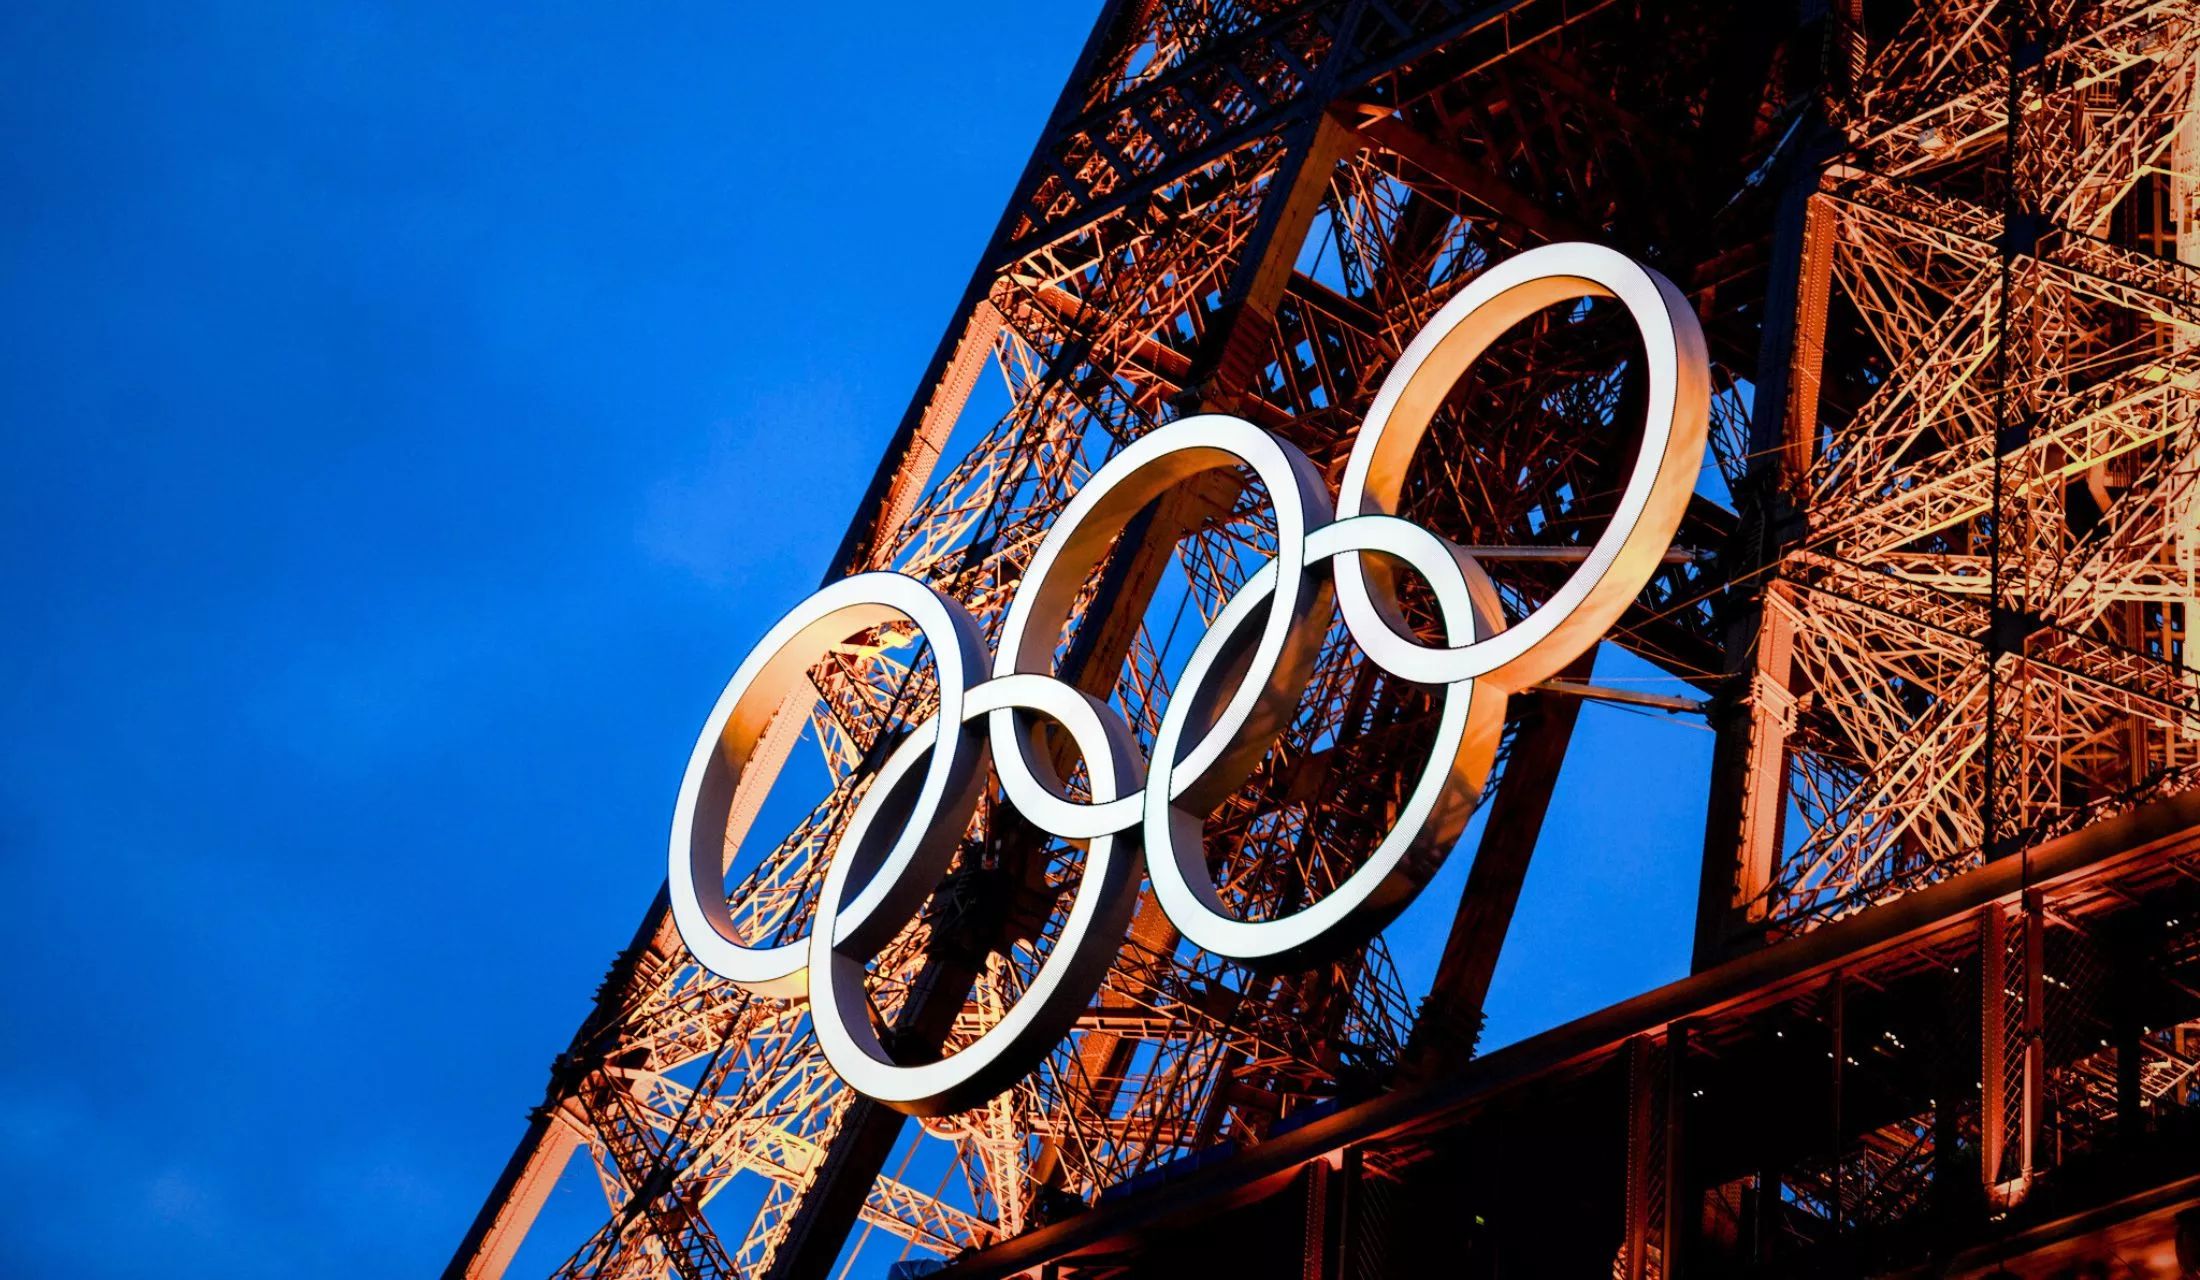 Paris Olimpiyatları Fransa siyasi krizinin gölgesinde başlıyor